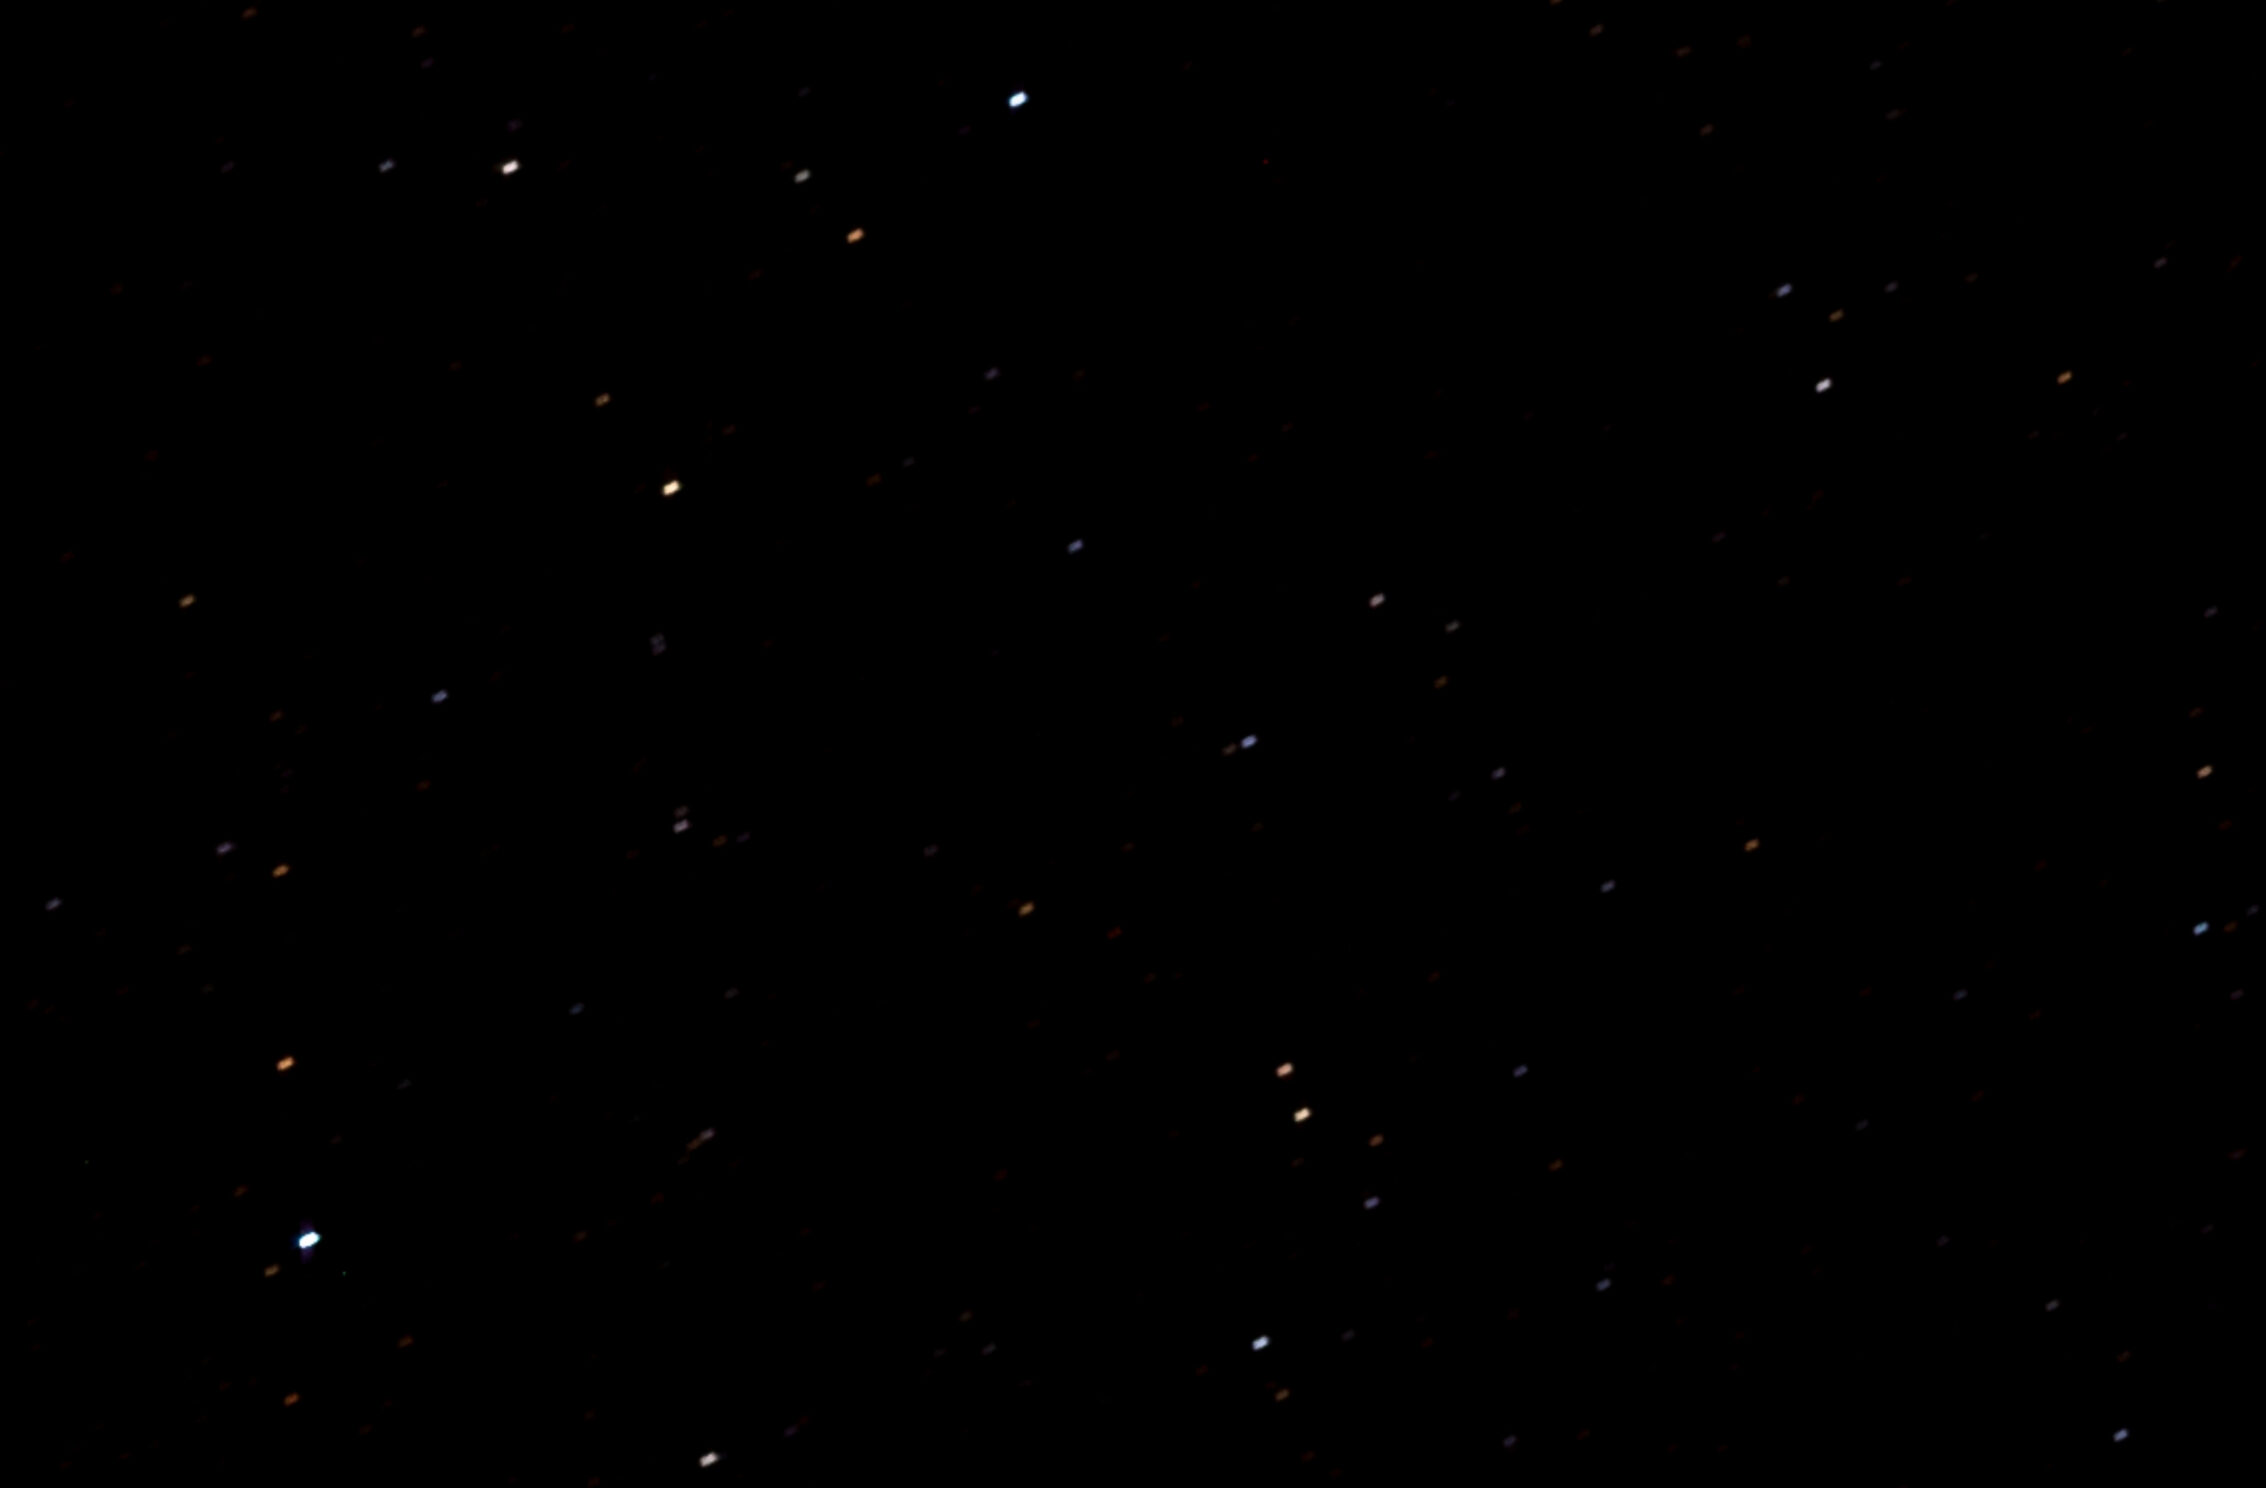 2266x1488 wallpaper Dark Sky Stars Galaxy iPad Wallpaper 2266x1488 pixels resolution